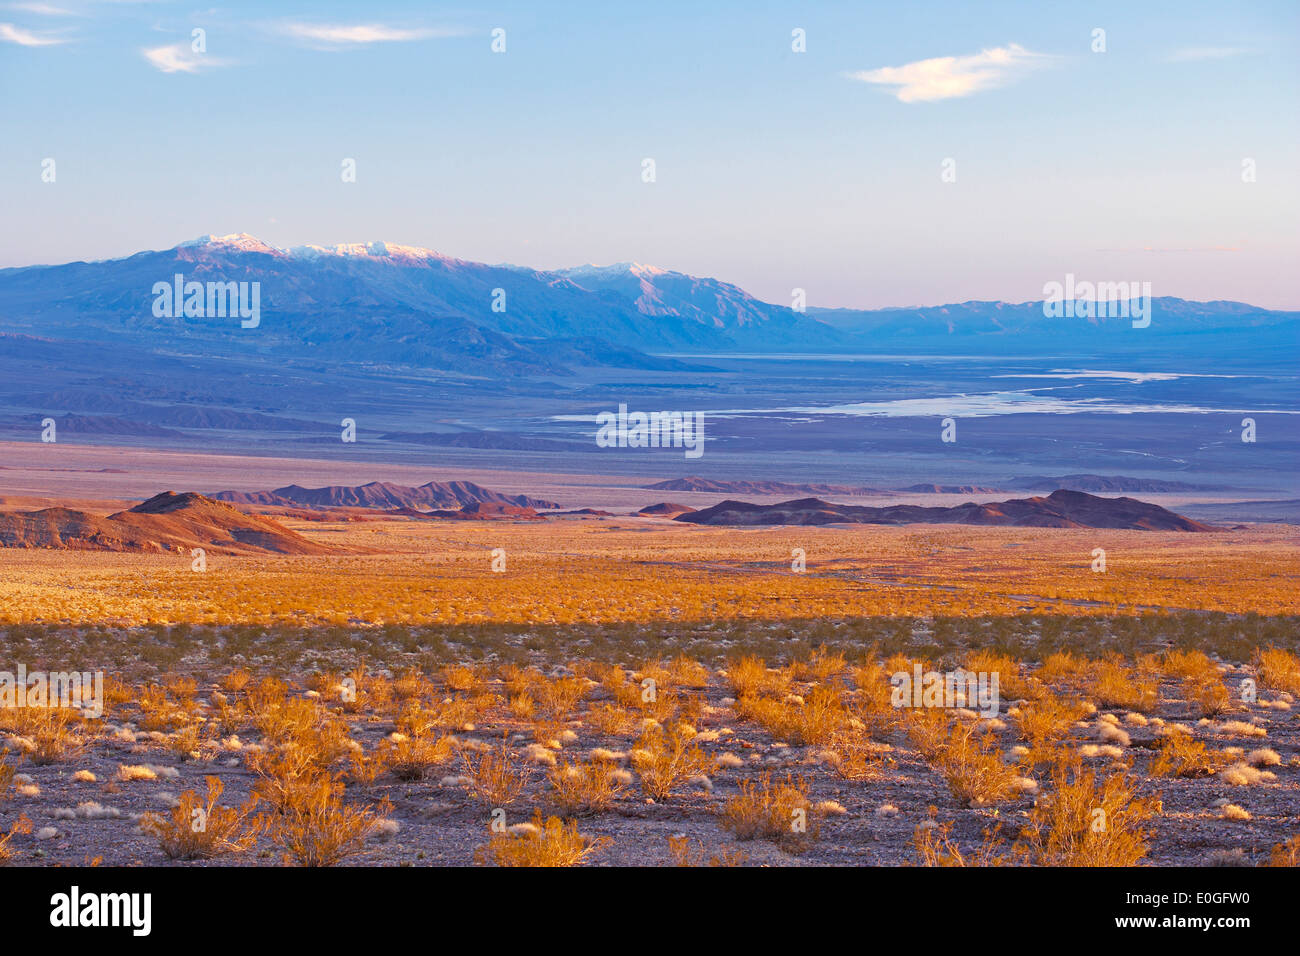 Vue de la vallée de la mort et l'Amargosa range dans la soirée, la Death Valley National Park, California, USA, Amérique Latine Banque D'Images